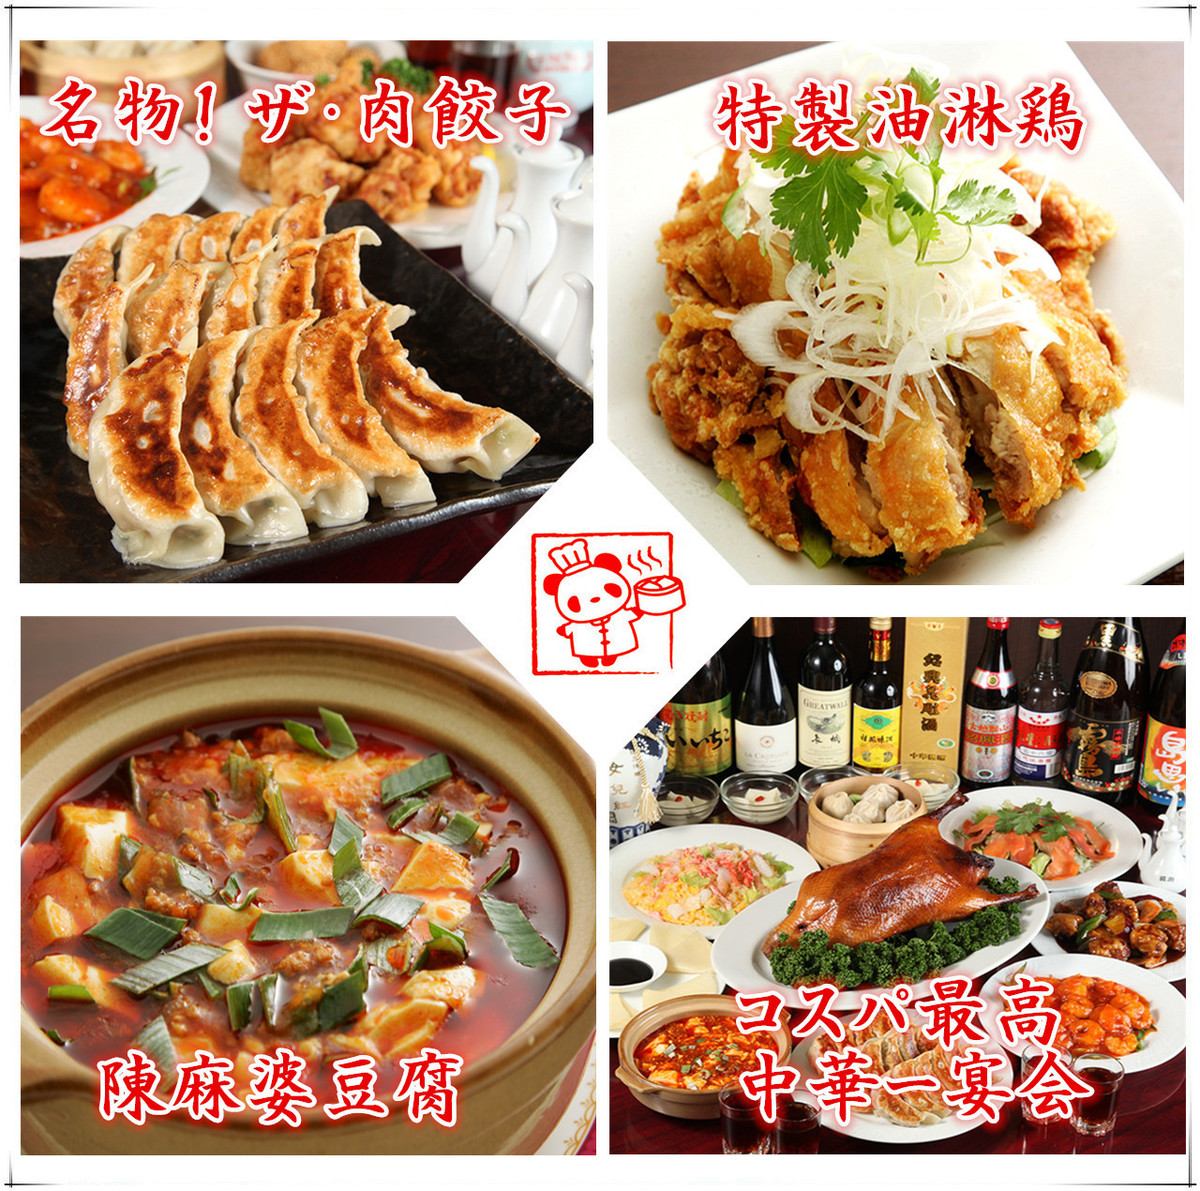 本格中華の「四川厨房」でお得な食べ飲み放題コースで各種宴会を